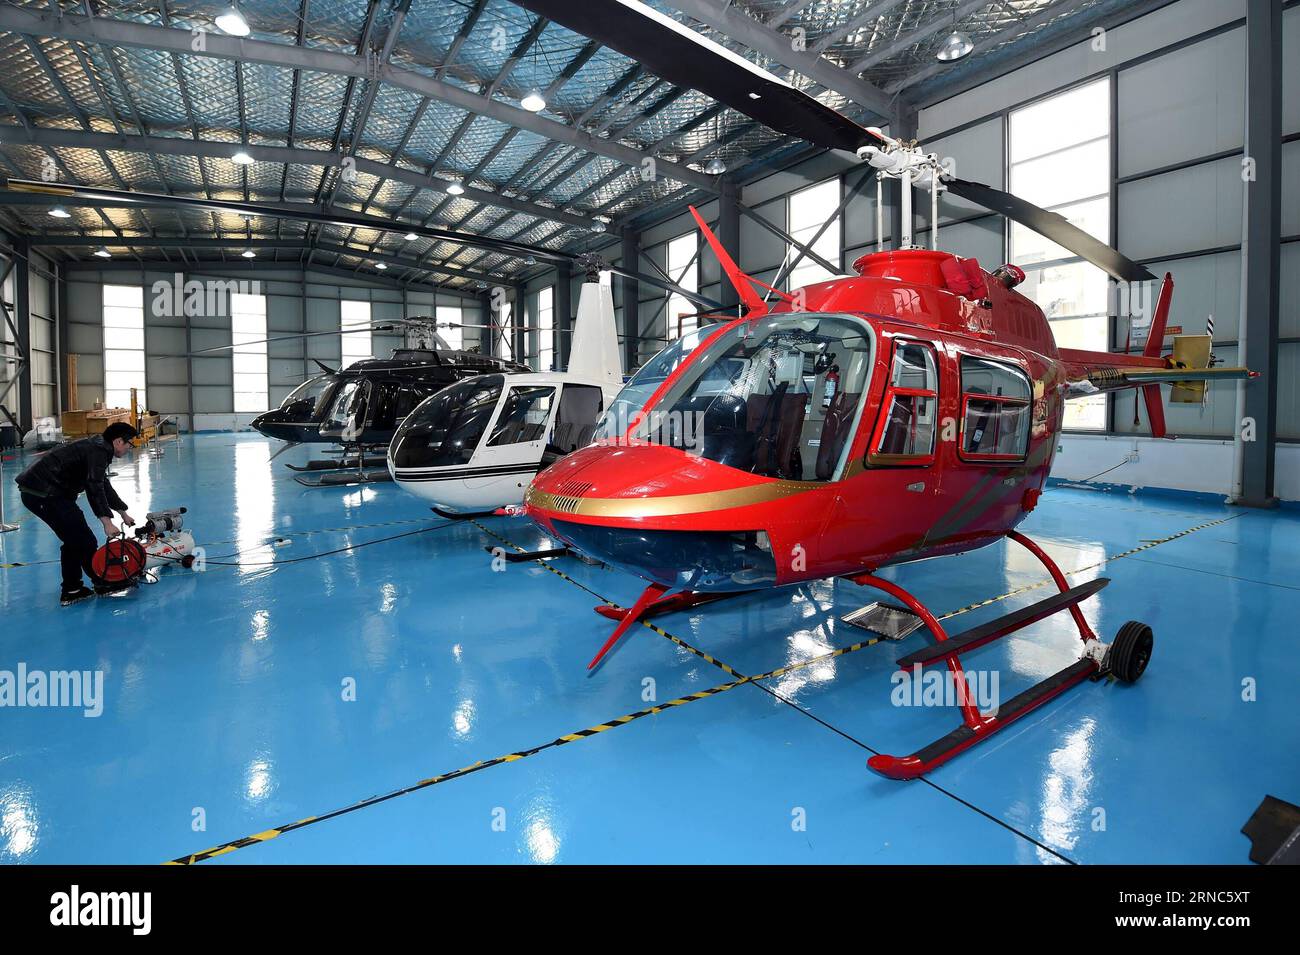 (160324) -- NINGBO, le 24 mars 2016 -- les hélicoptères à vendre sont garés au centre Yida de Shanghai General Dynamic Aero Tech. Company (GDAT), un magasin 5S d'avions généraux, dans la zone portuaire bondée de Meishan à Ningbo, dans la province de Zhejiang de l'est de la Chine, le 23 mars 2016. Le magasin General Aircraft 5S, ouvert le 8 avril 2015, a vendu de loin 88 hélicoptères. Le magasin fournit plus de 20 types d'hélicoptères avec le prix de vente entre trois à 100 millions de yuans (461,400-15,38 millions de dollars américains). (lfj) CHINA-ZHEJIANG-NINGBO-AIRCRAFT STORE (CN) HuangxZongzhi PUBLICATIONxNOTxINxCHN Ning Banque D'Images